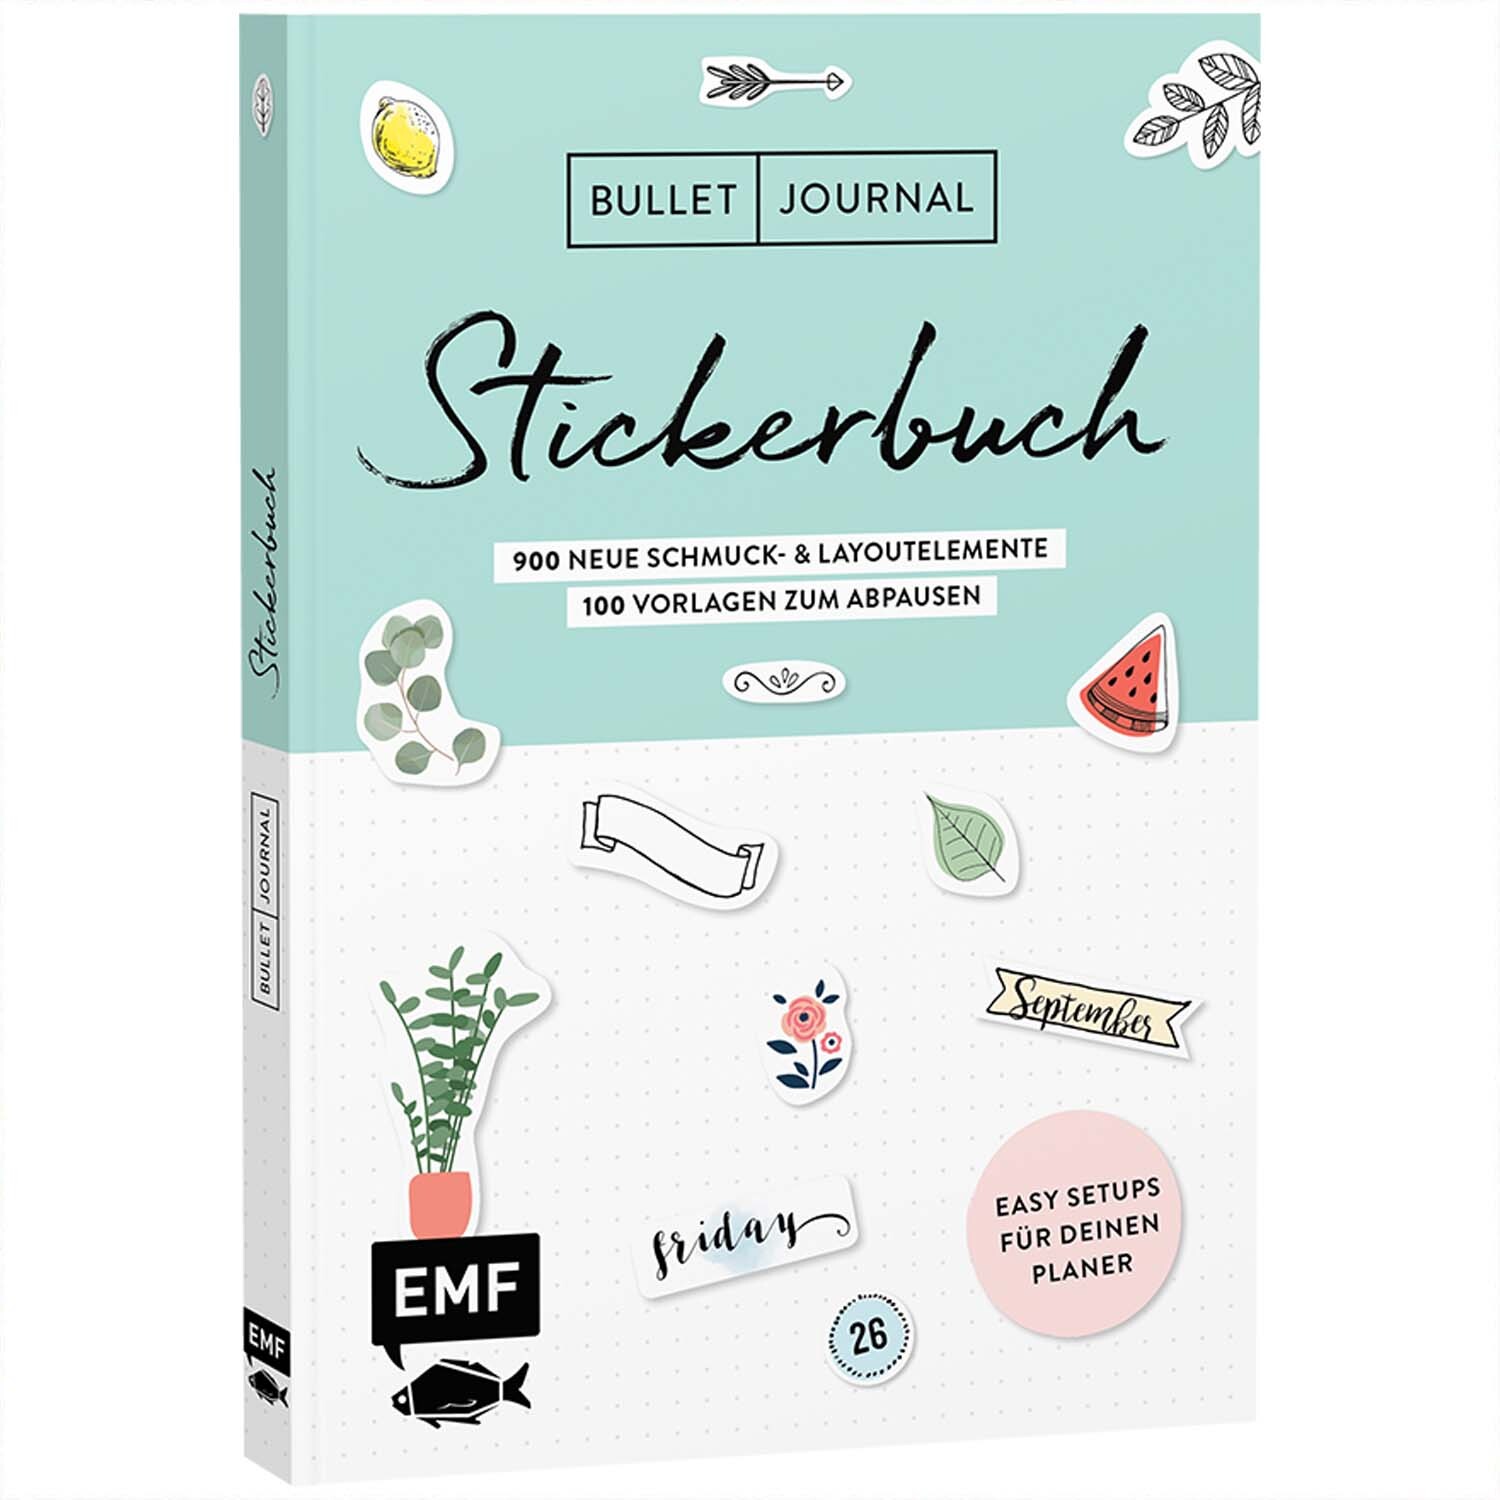 Stickerbuch Band 2: 900 neue Schmuck- und Layoutelemente